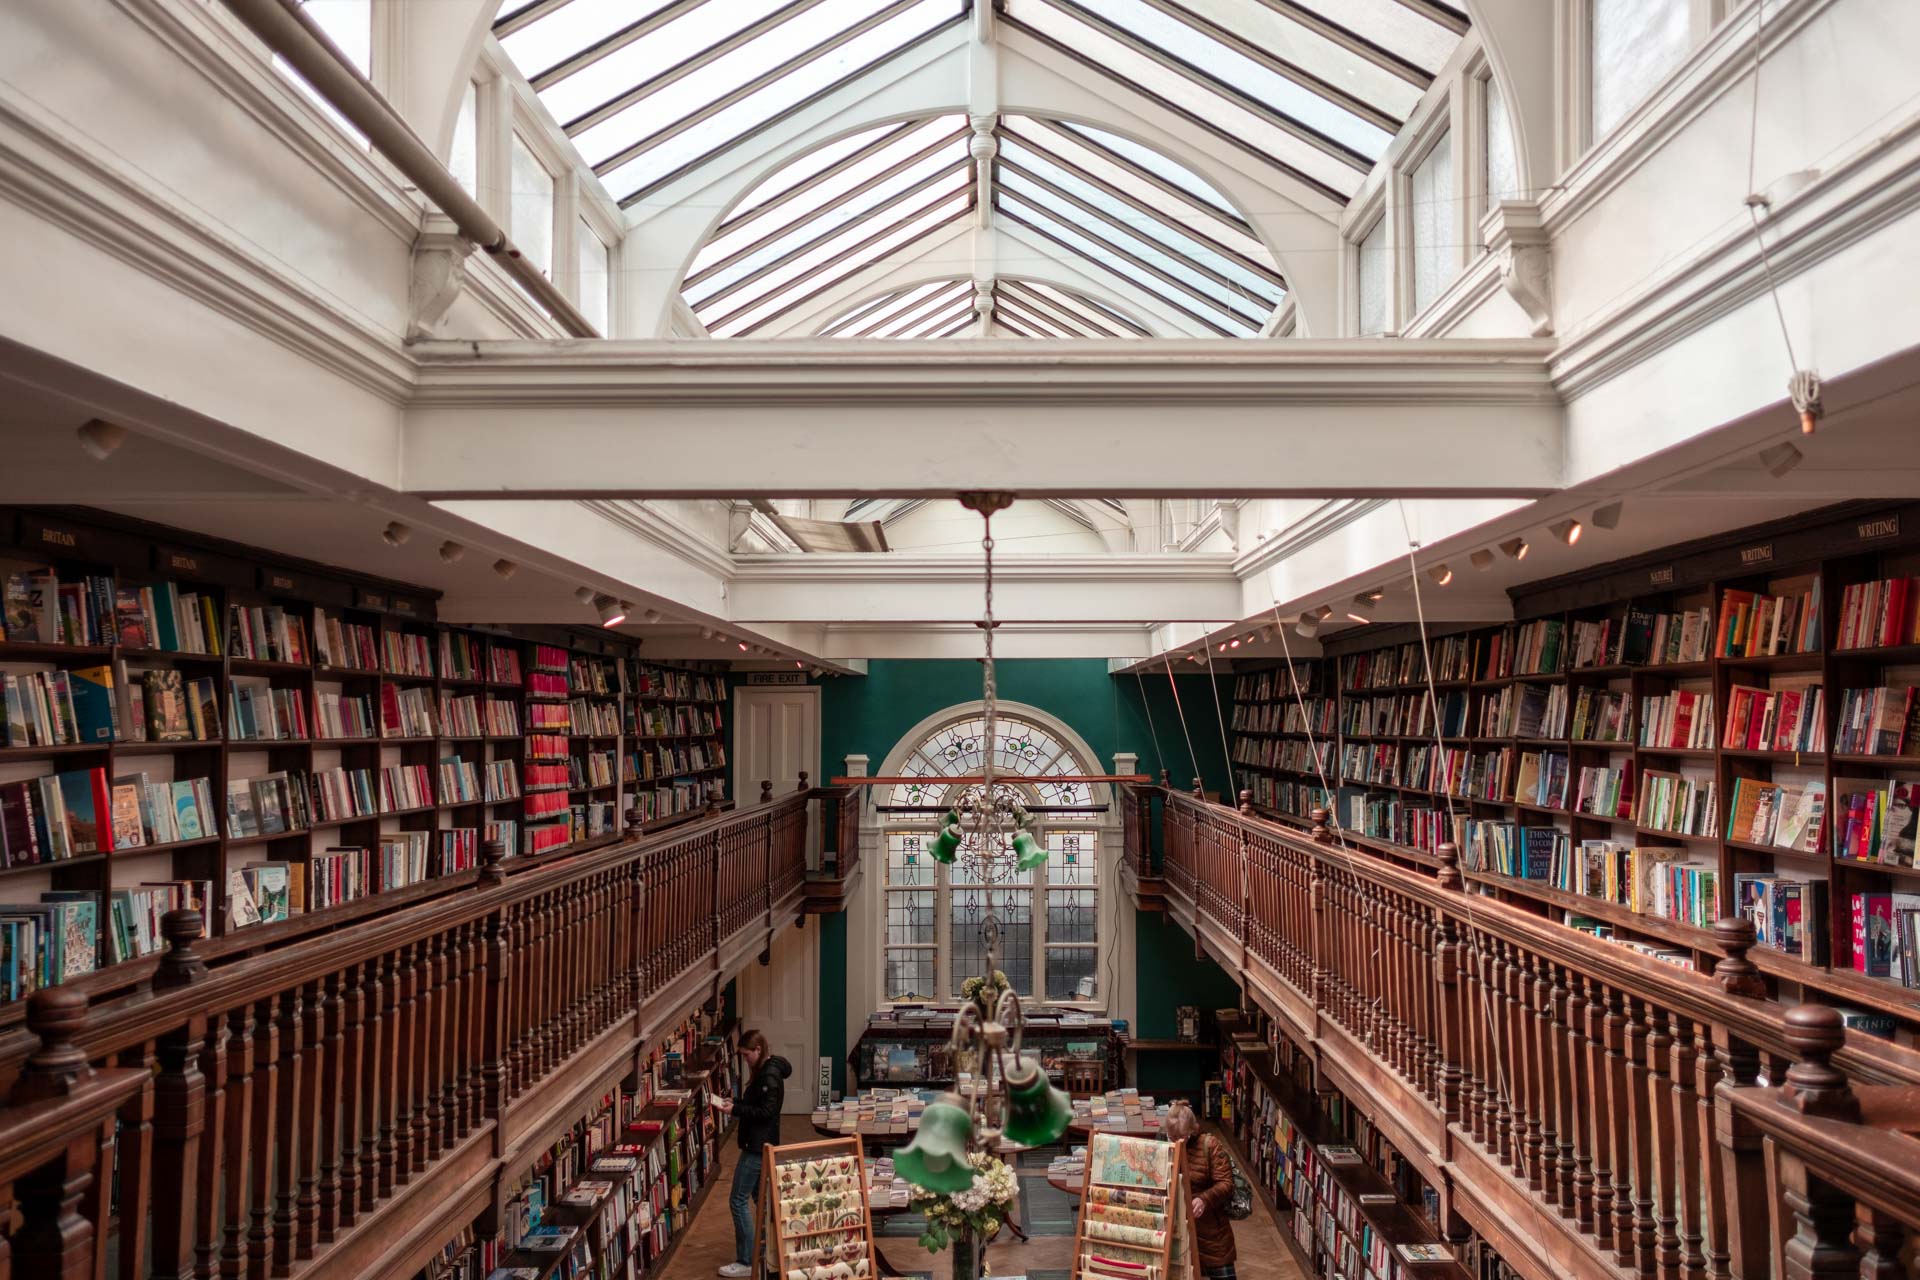 London Bookshops